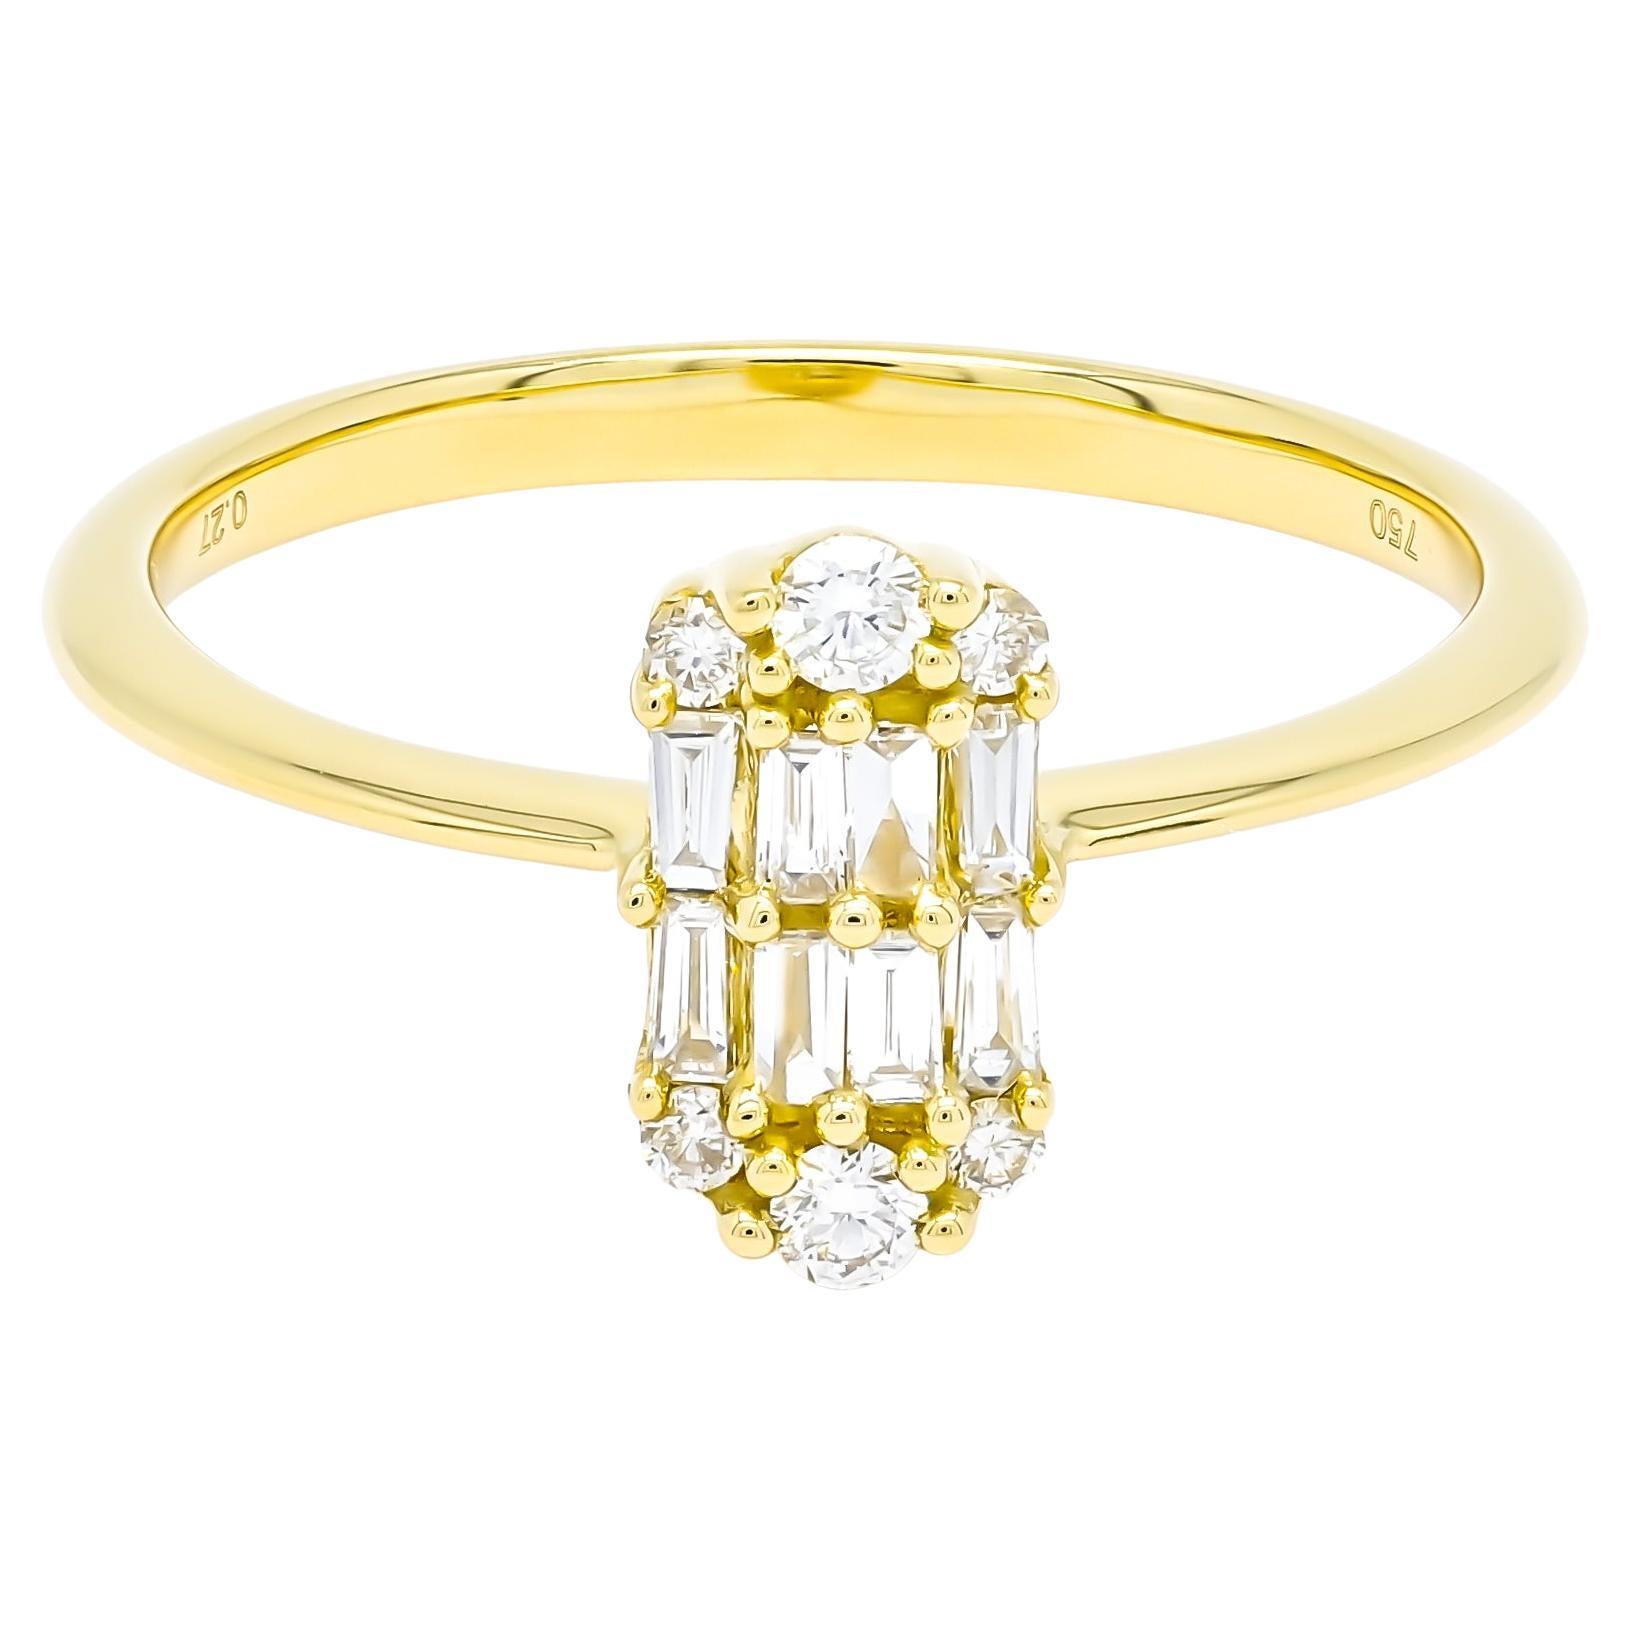 Bague Art déco en or jaune 18 carats avec diamants ronds baguettes naturels et grappe d'illusion